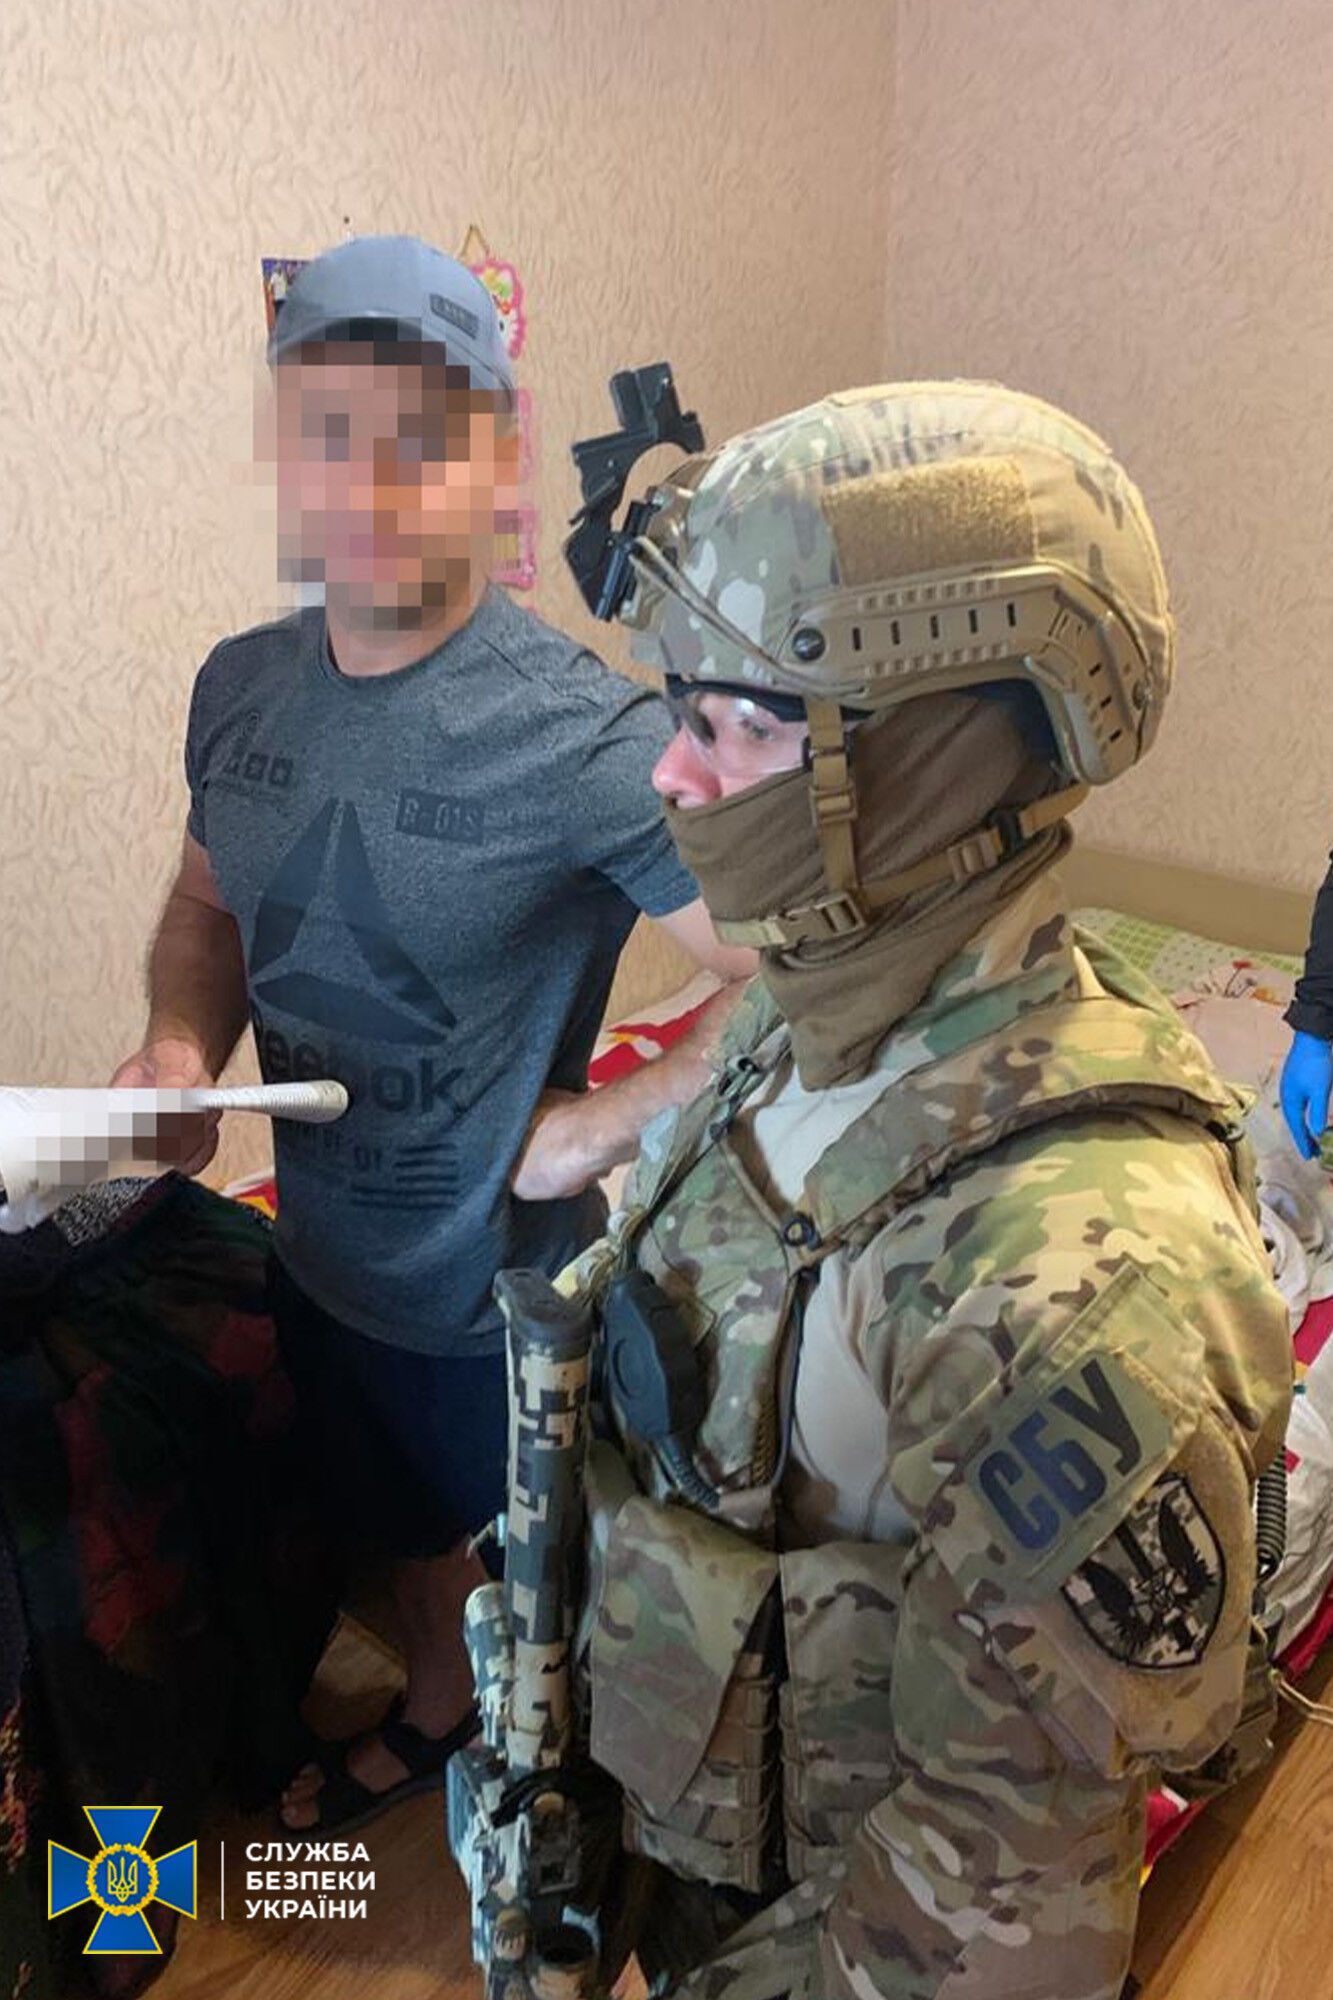 СБУ задержала предателя, готовившего для РФ списки ''потенциальных целей'' среди украинских чиновников. Фото